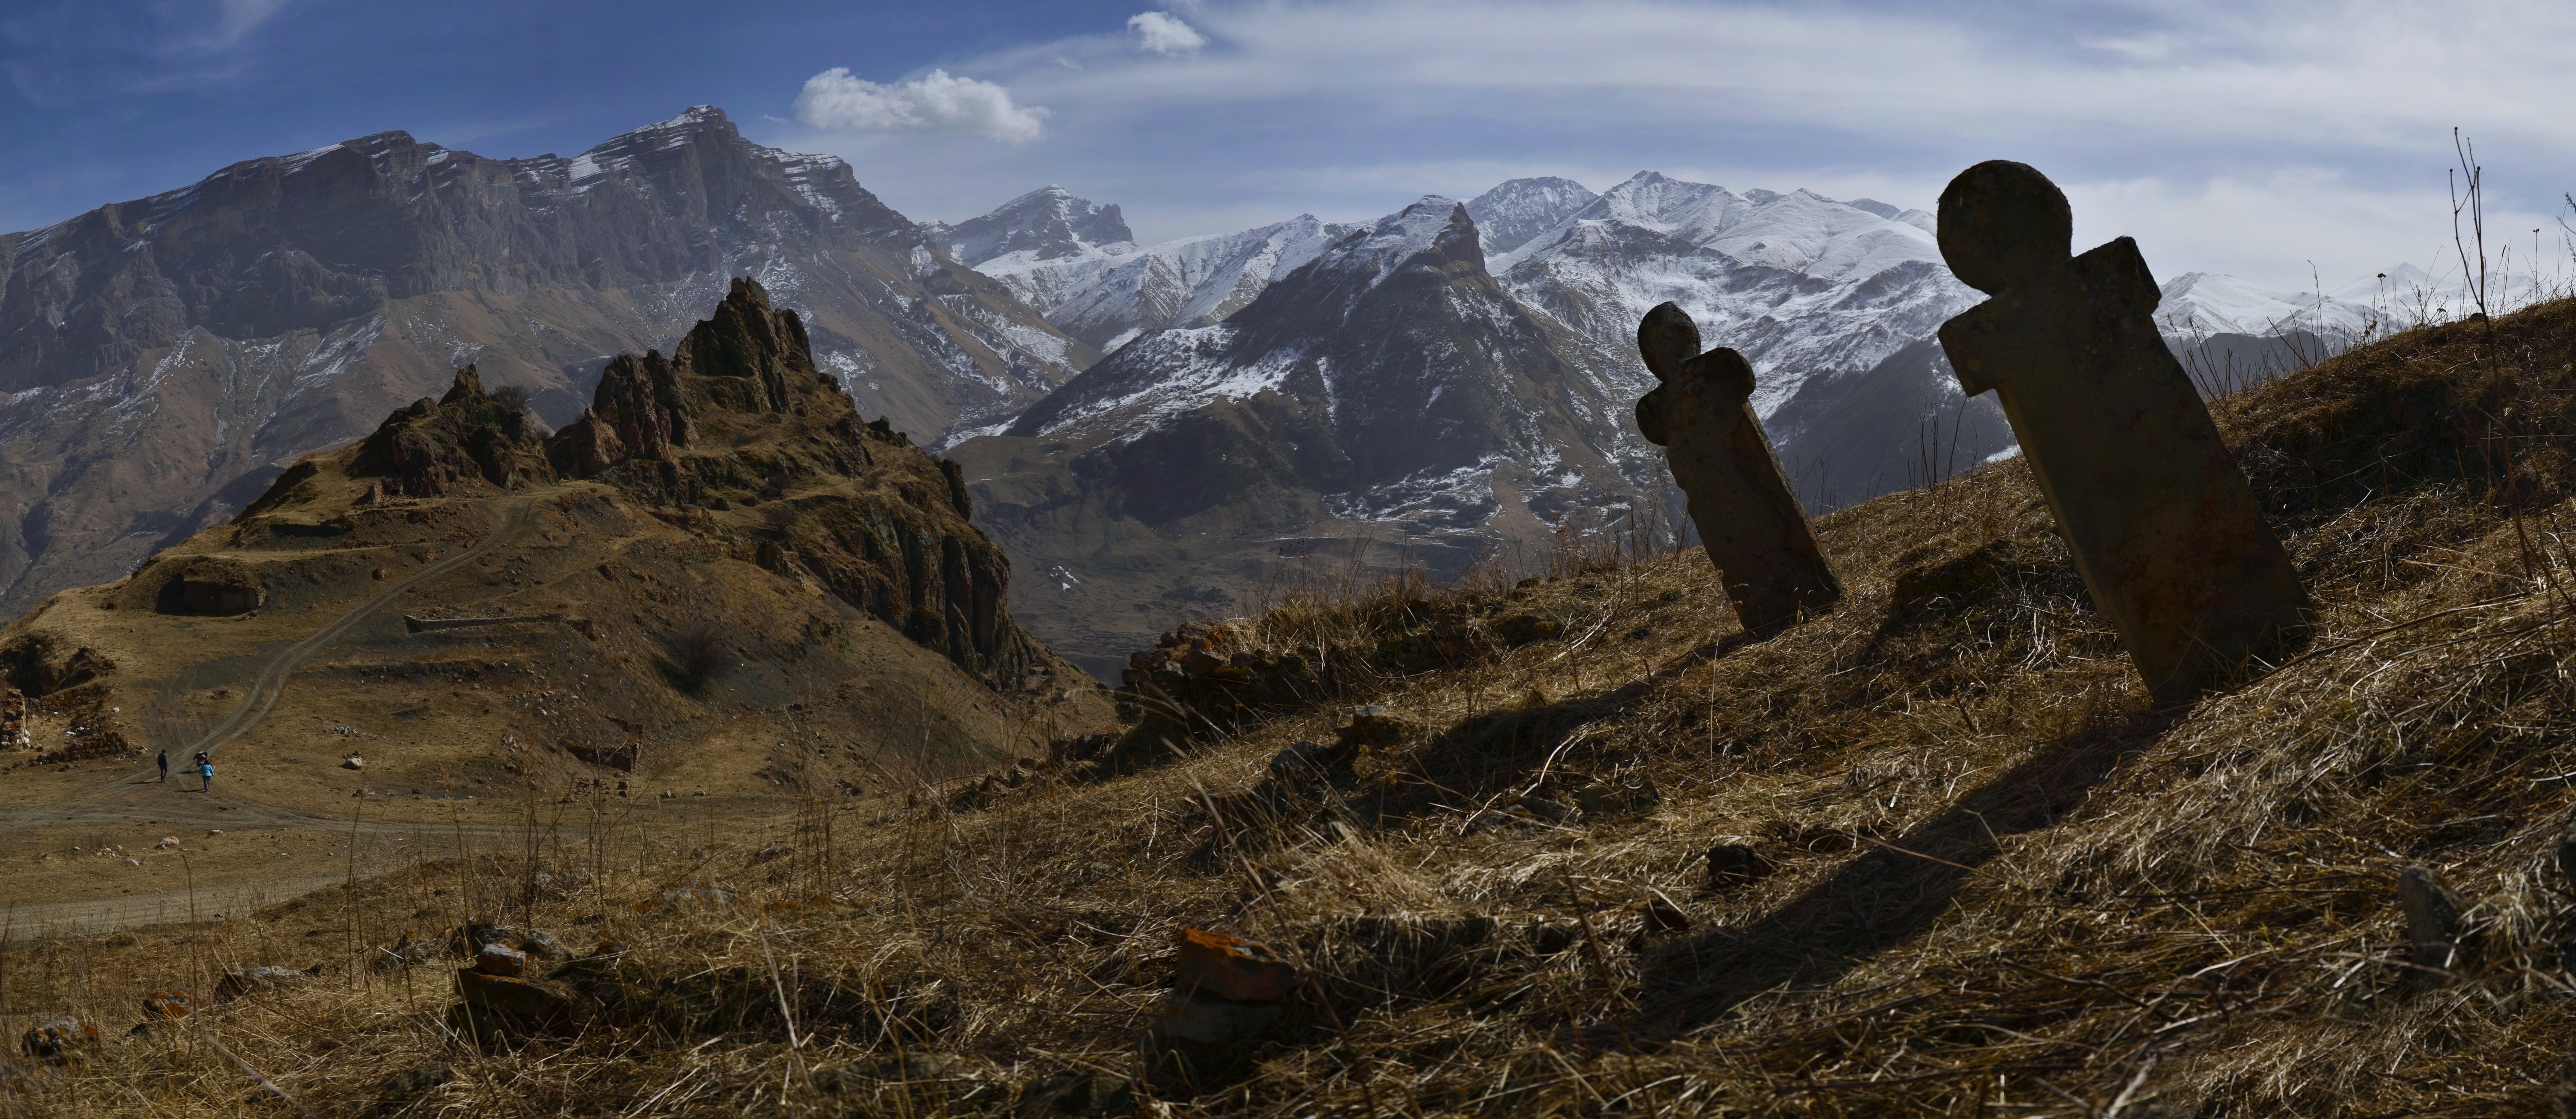 Хуламо-Безенгийское ущелье - Кавказские Гималаи в Нальчике Экскурсия цена  15000₽